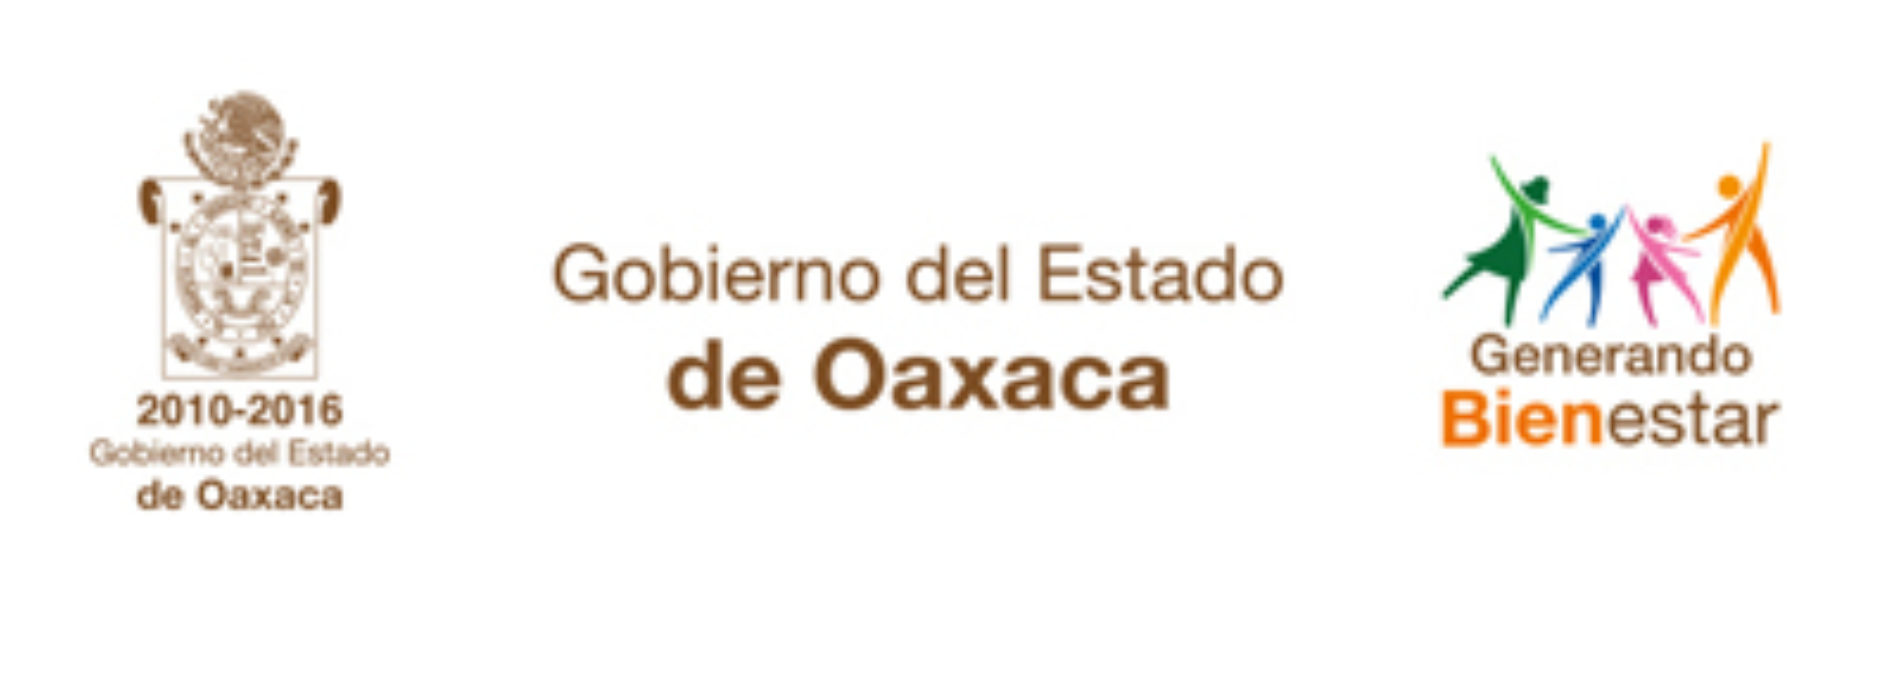 Reafirma Gabino Cué facilidades del Gobierno de Oaxaca para fortalecer inversiones a escala mundial